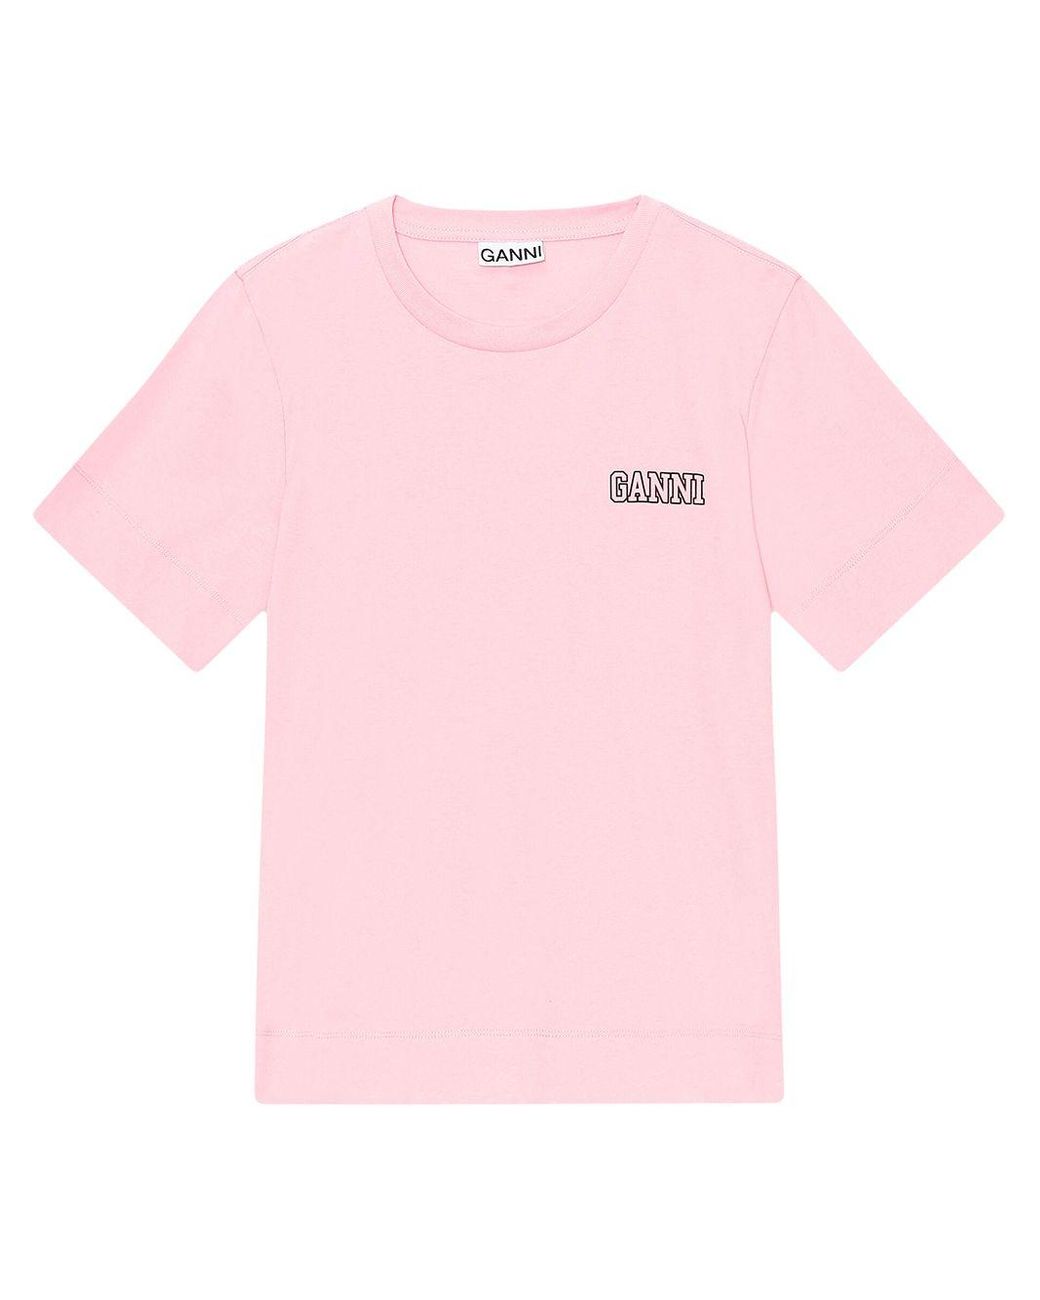 Ganni Cotton Logo-print Crew Neck T-shirt in Pink - Lyst